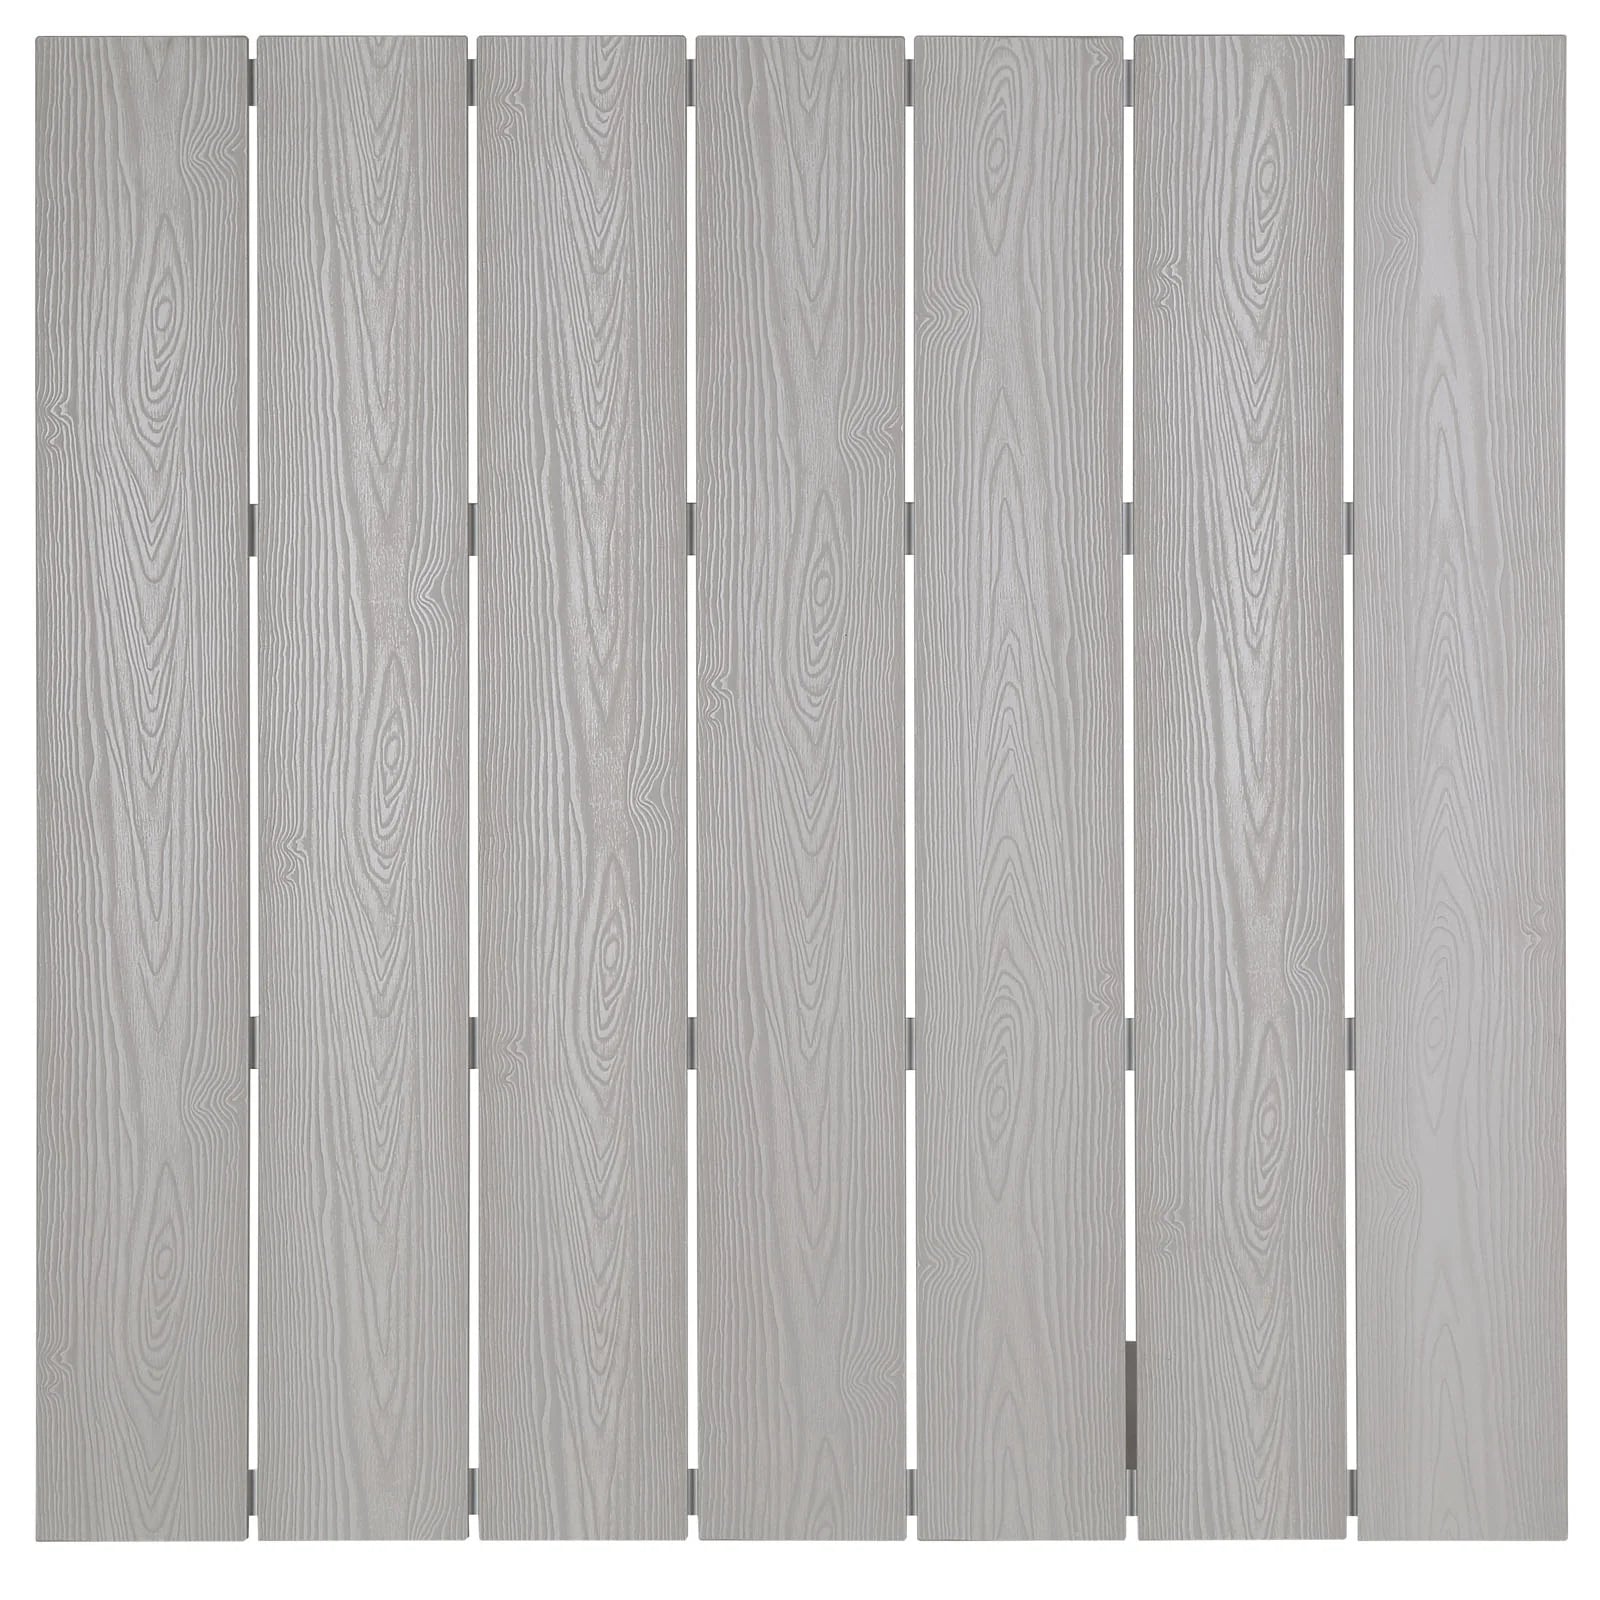 Mesa de barra para exterior de madera sintética y aluminio Lore color gris claro superficie.